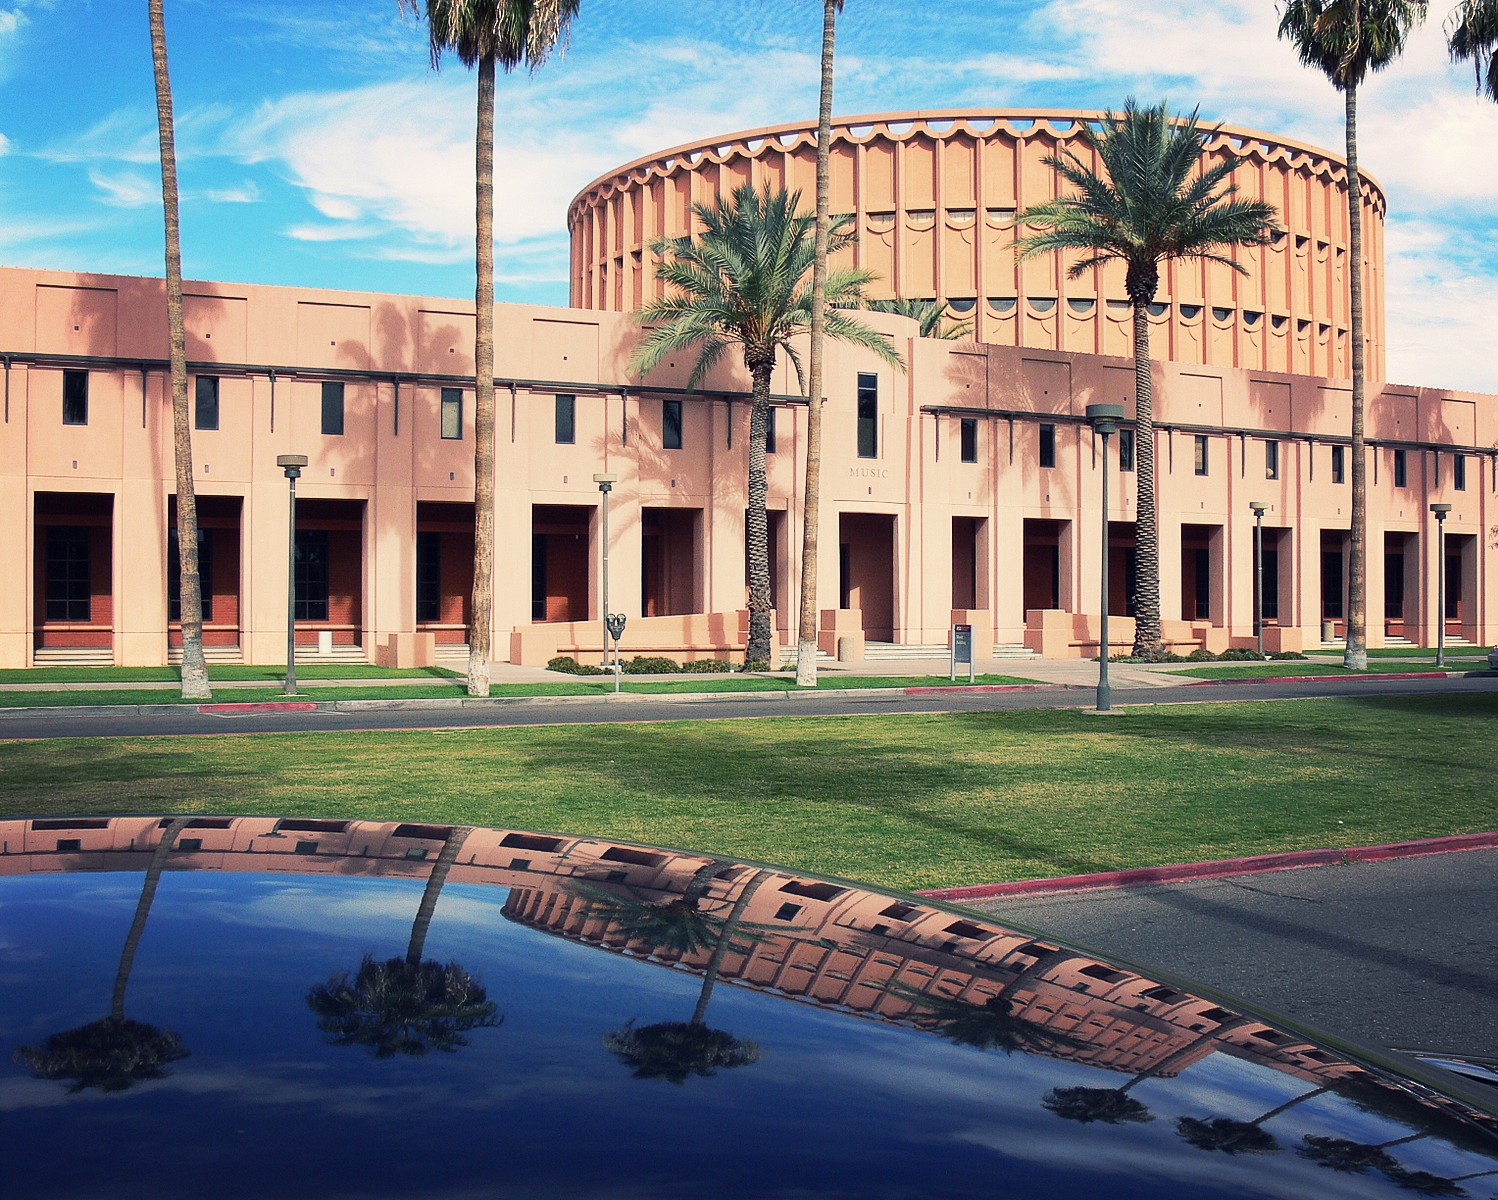 La Universidad Estatal de Arizona (ASU) - Campus Tempe, una universidad pública fundada en 1885, es la universidad más innovadora de los Estados Unidos de acuerdo a un ranking publicado por U.S. News & World Report.  - Foto: ASU Tempe por Wars / Wikimedia Commons.